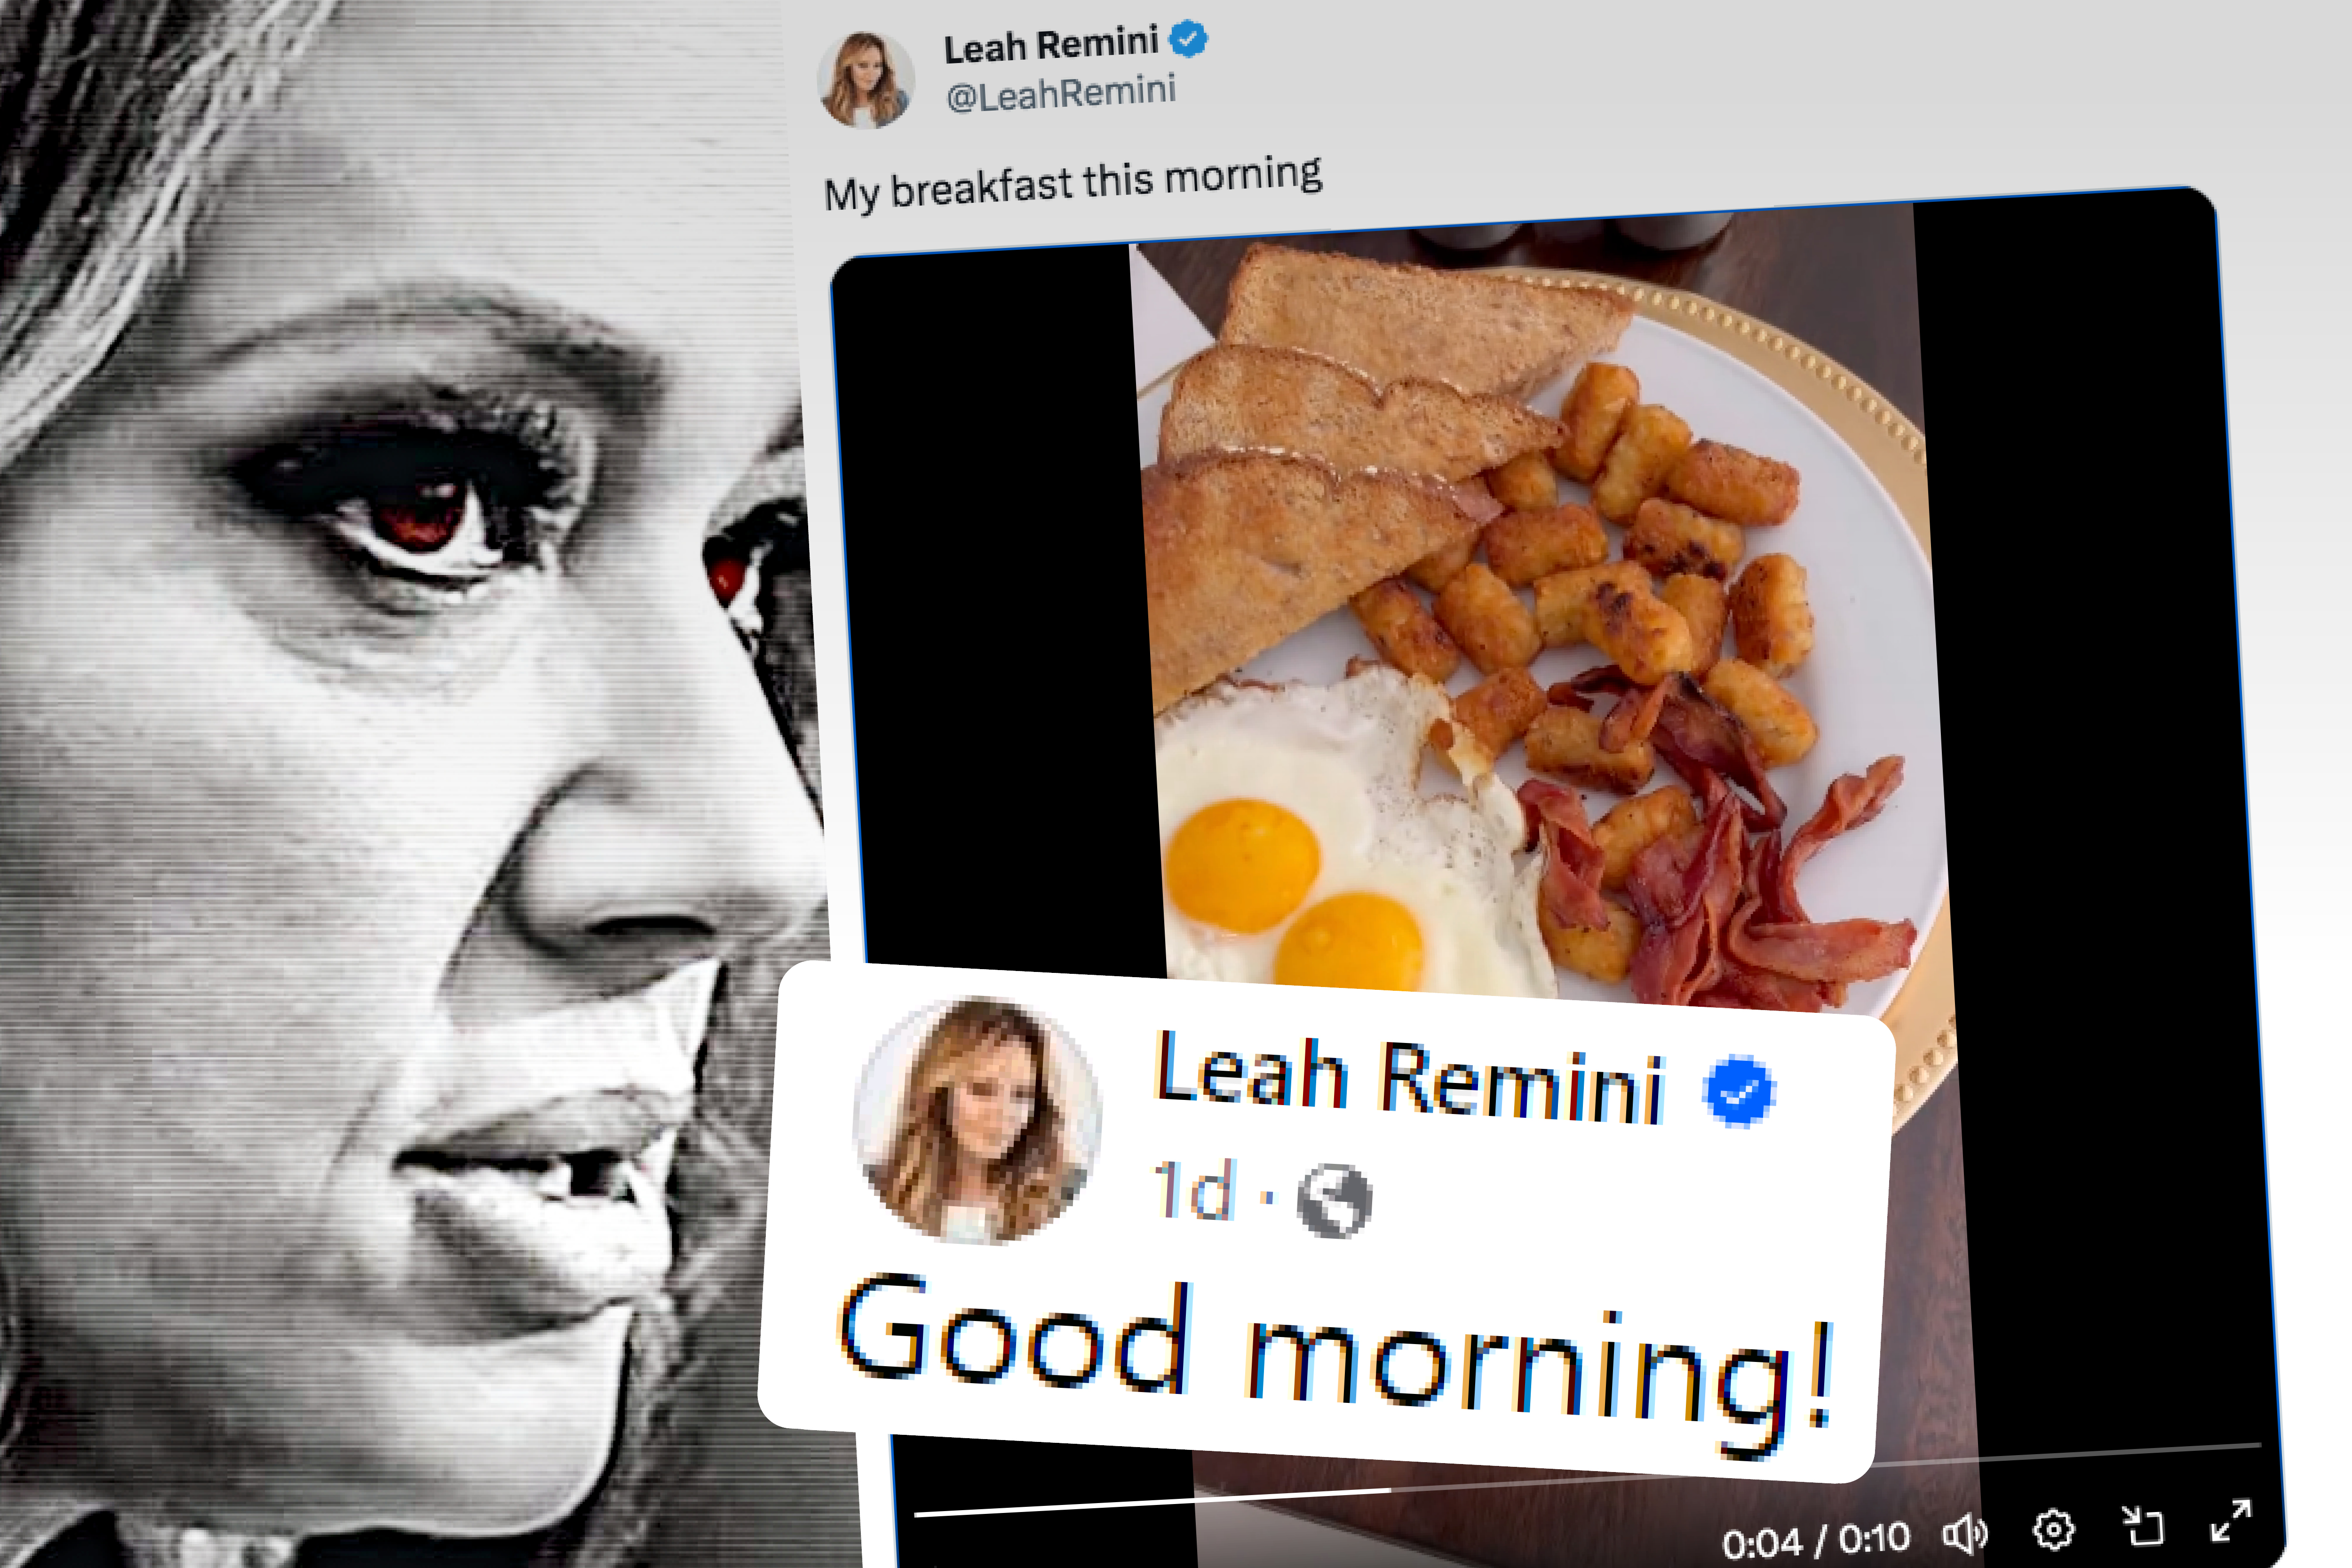 Leah Remini